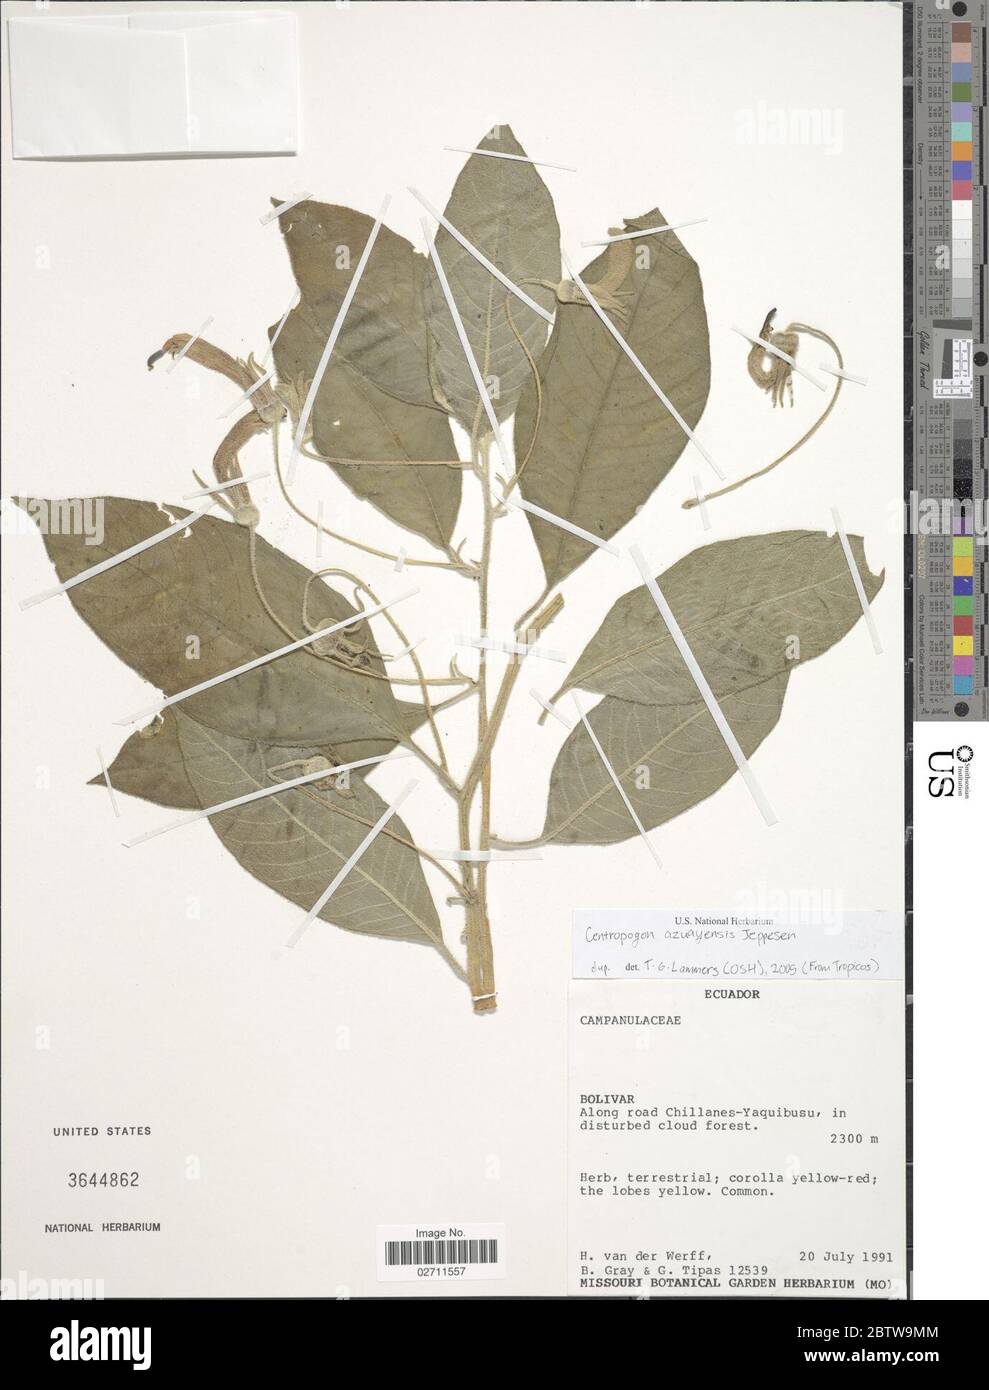 Centropogon azuayensis Jeppesen. Banque D'Images